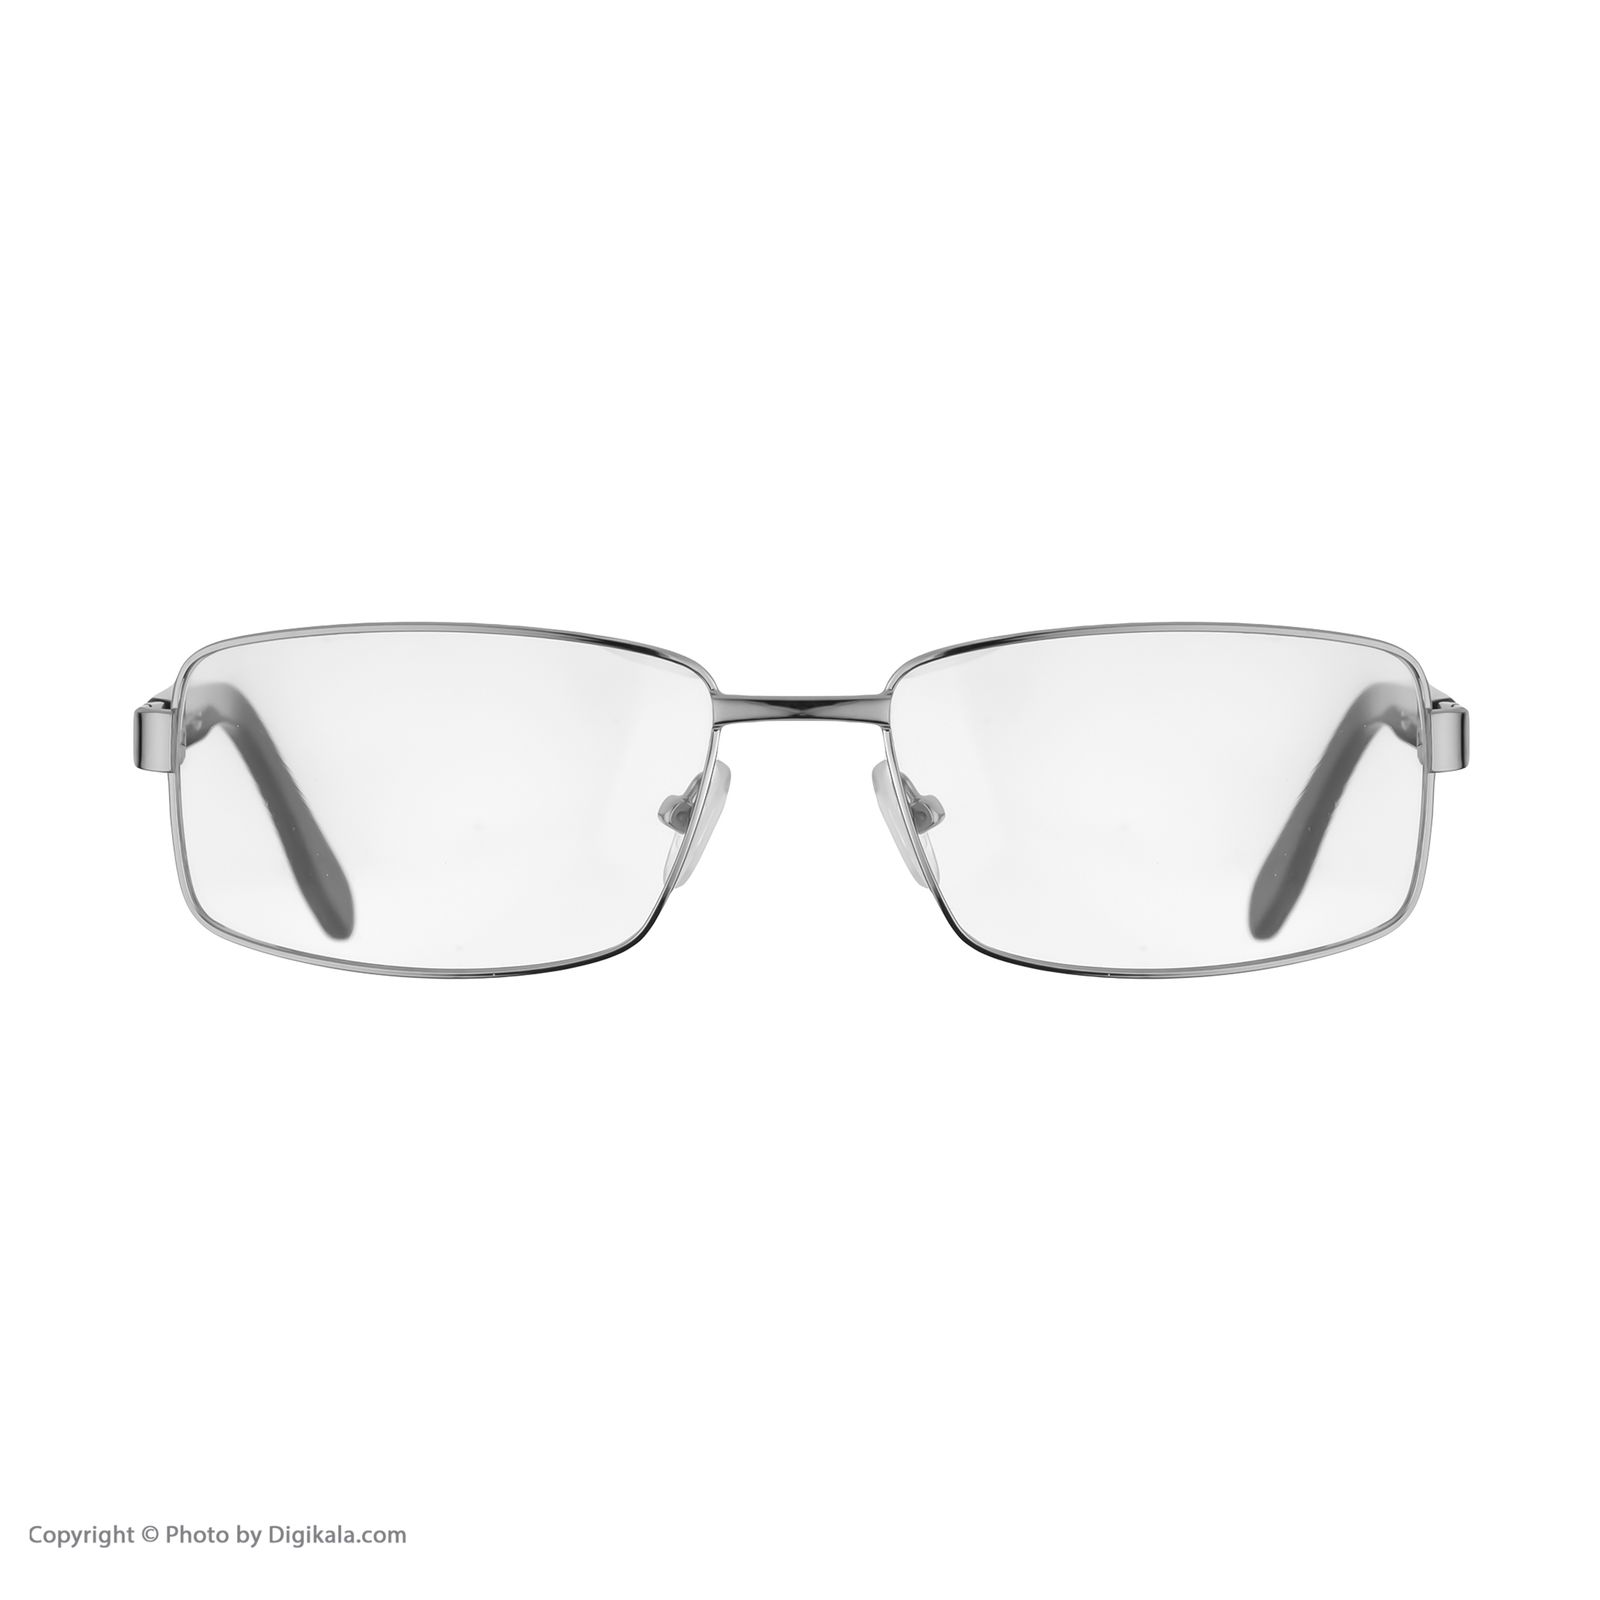 فریم عینک طبی هوگو باس مدل 4103 -  - 6